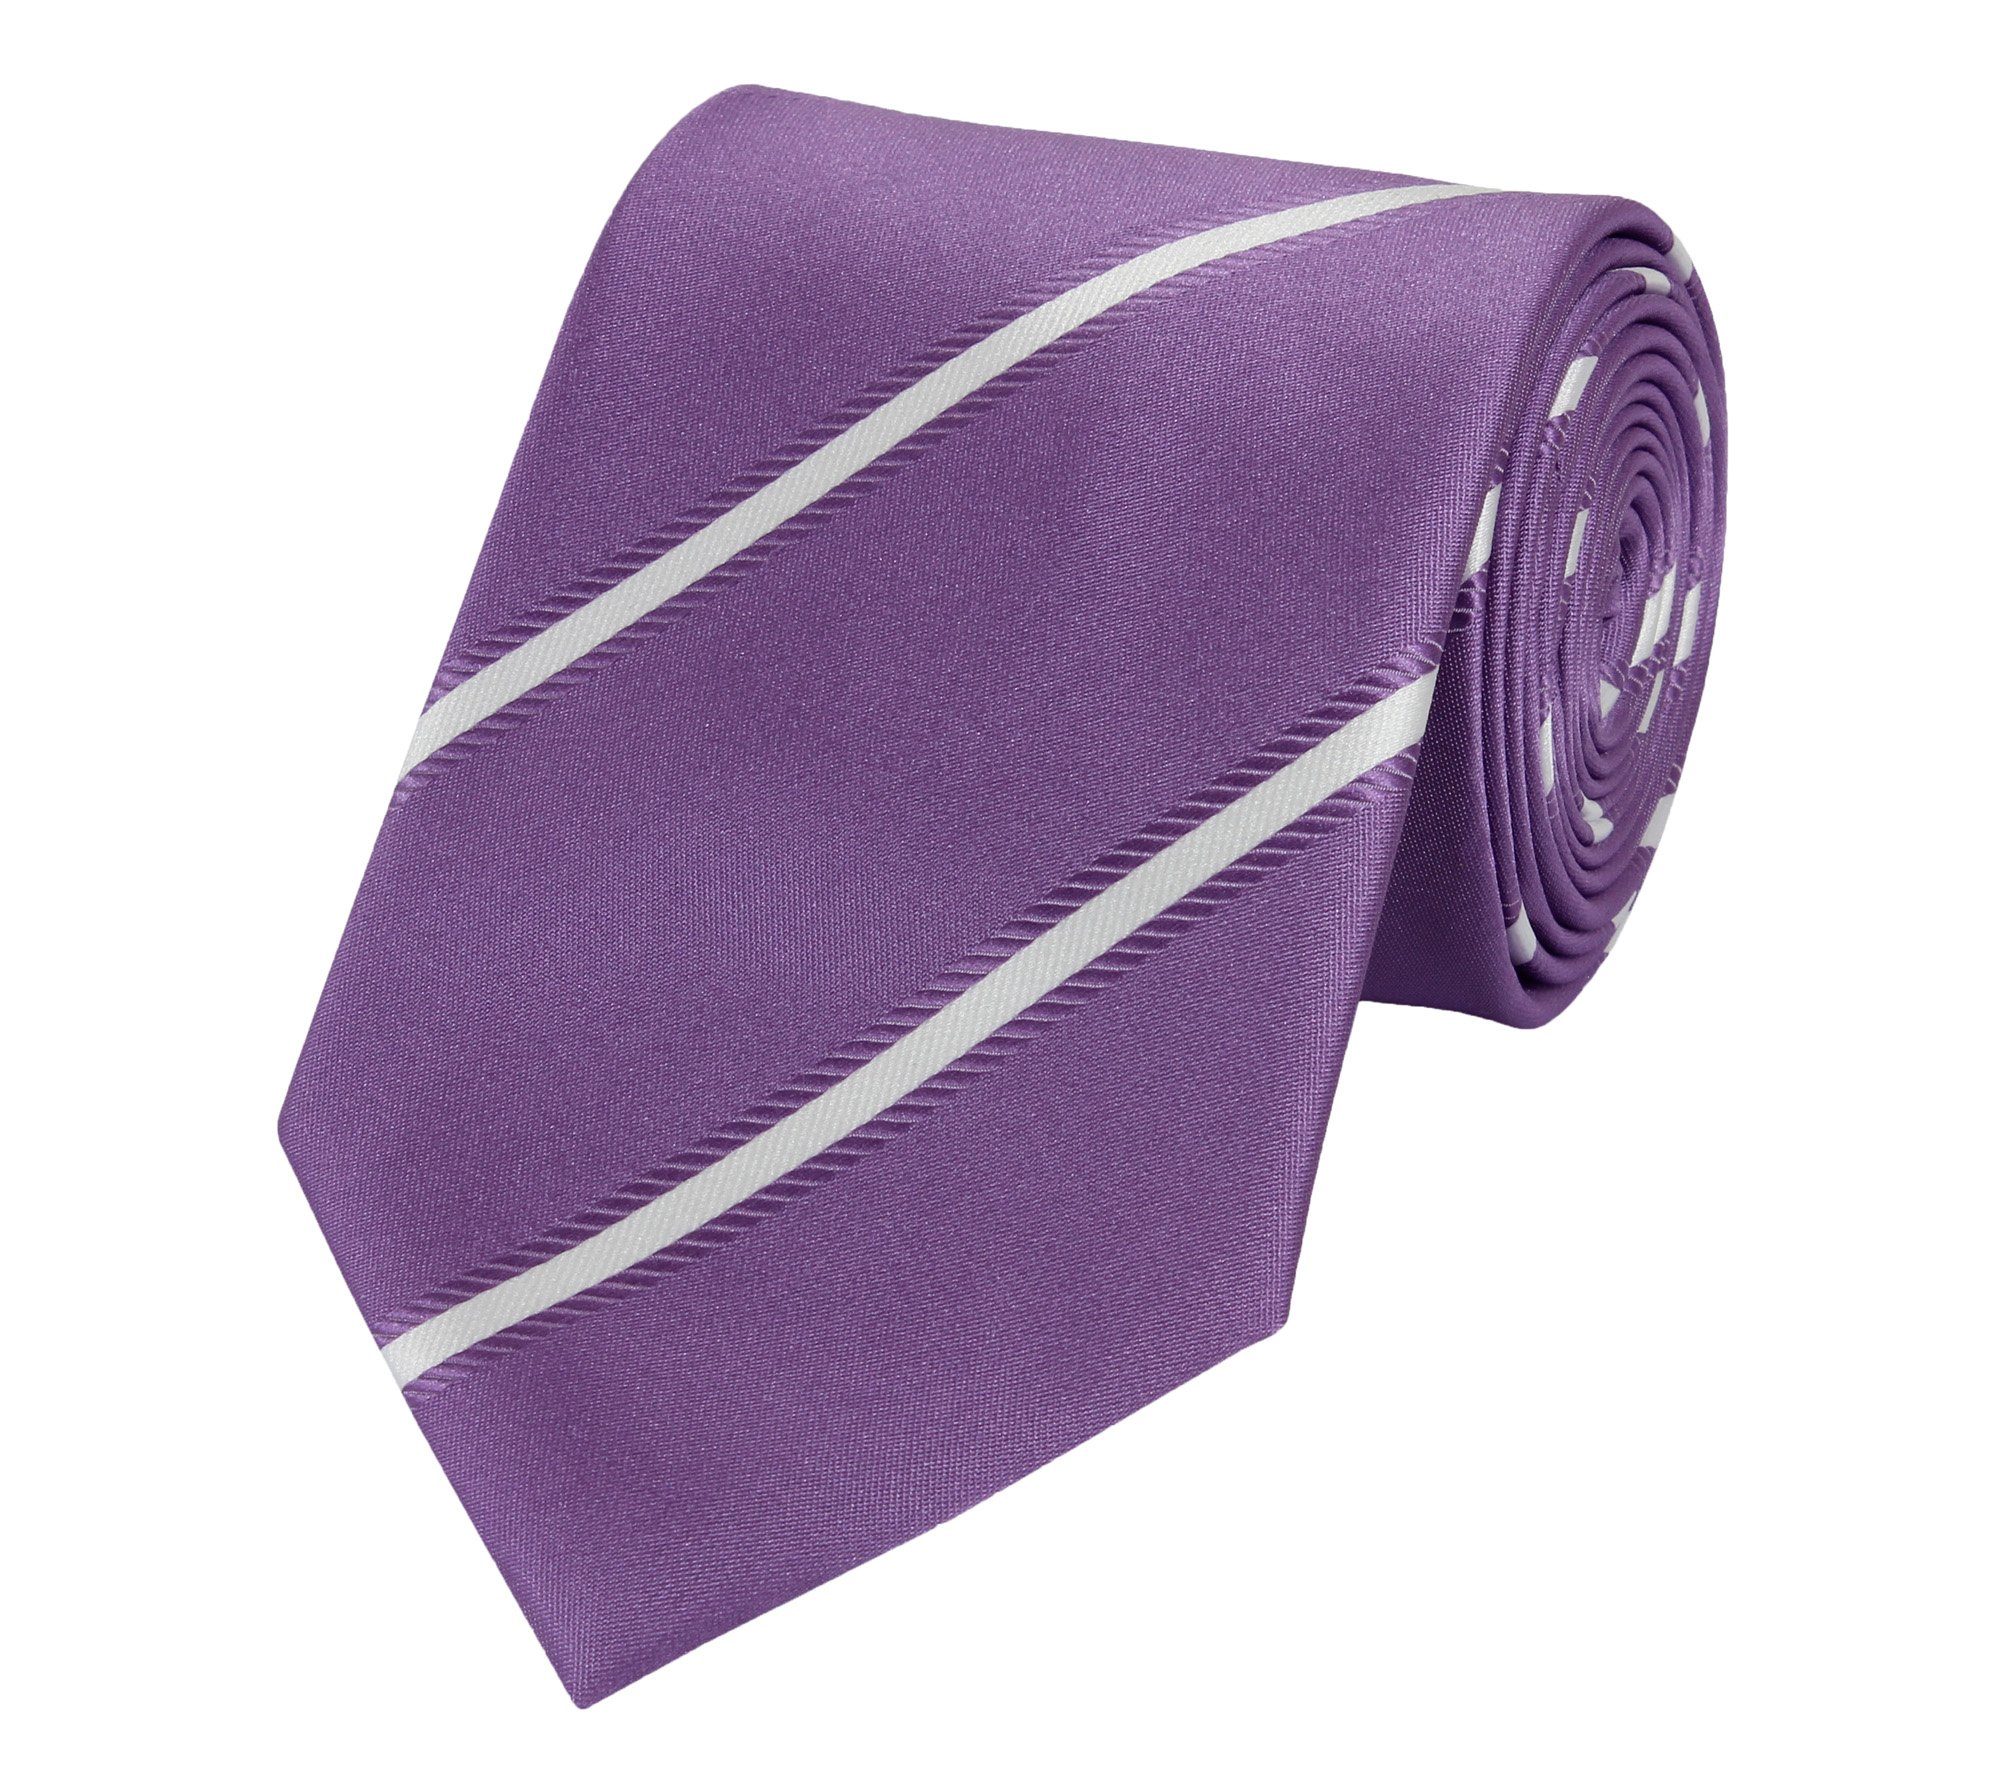 Fabio Farini Krawatte Herren Krawatten mit Farbton Lila - Schlips in 8cm Breite (ohne Box, Gestreift) Breit (8cm), Violett/Weiß